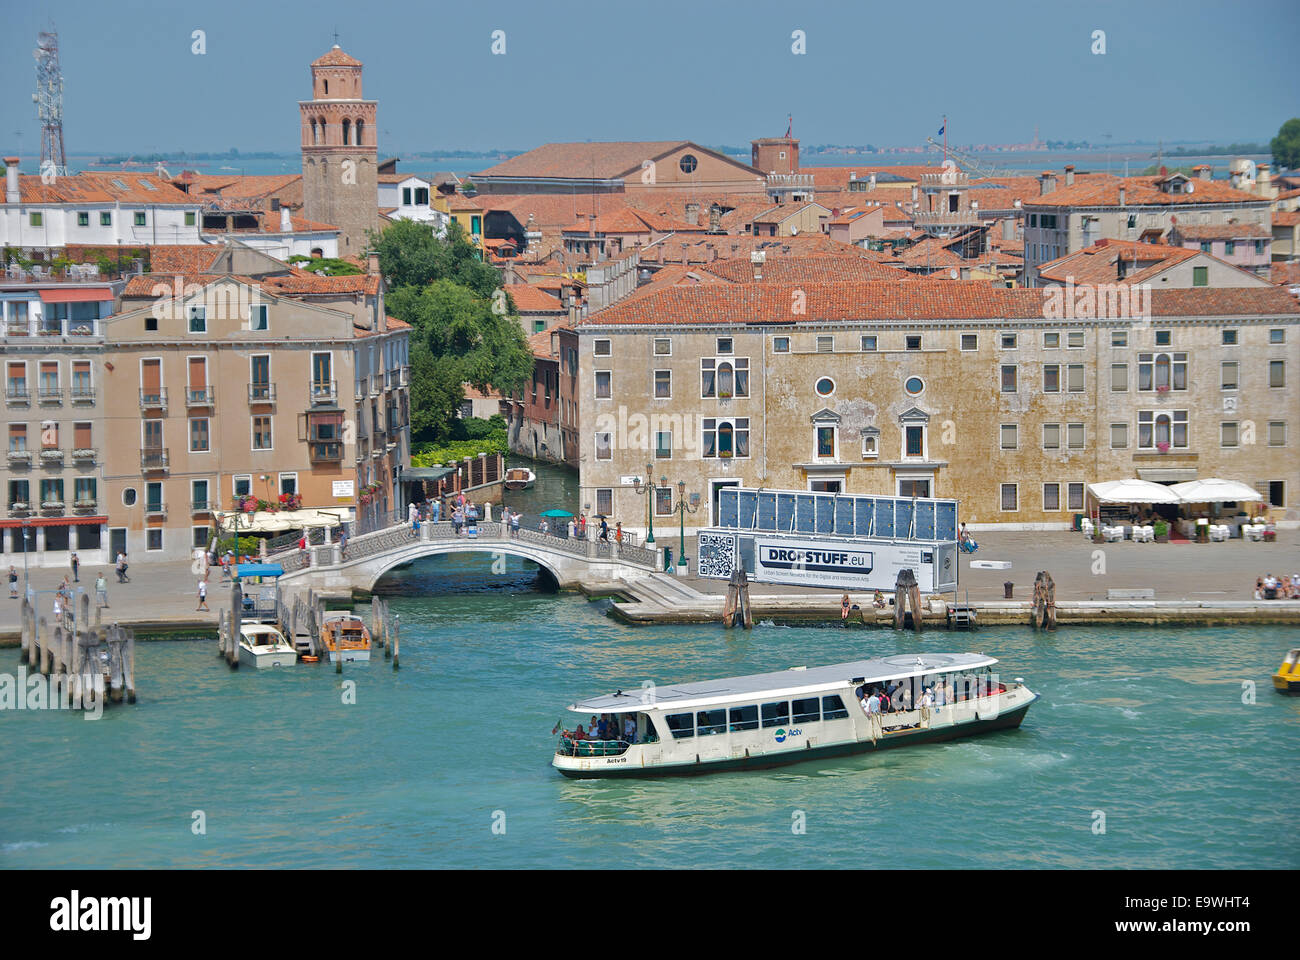 La città di Venezia vista dall'acqua Foto Stock